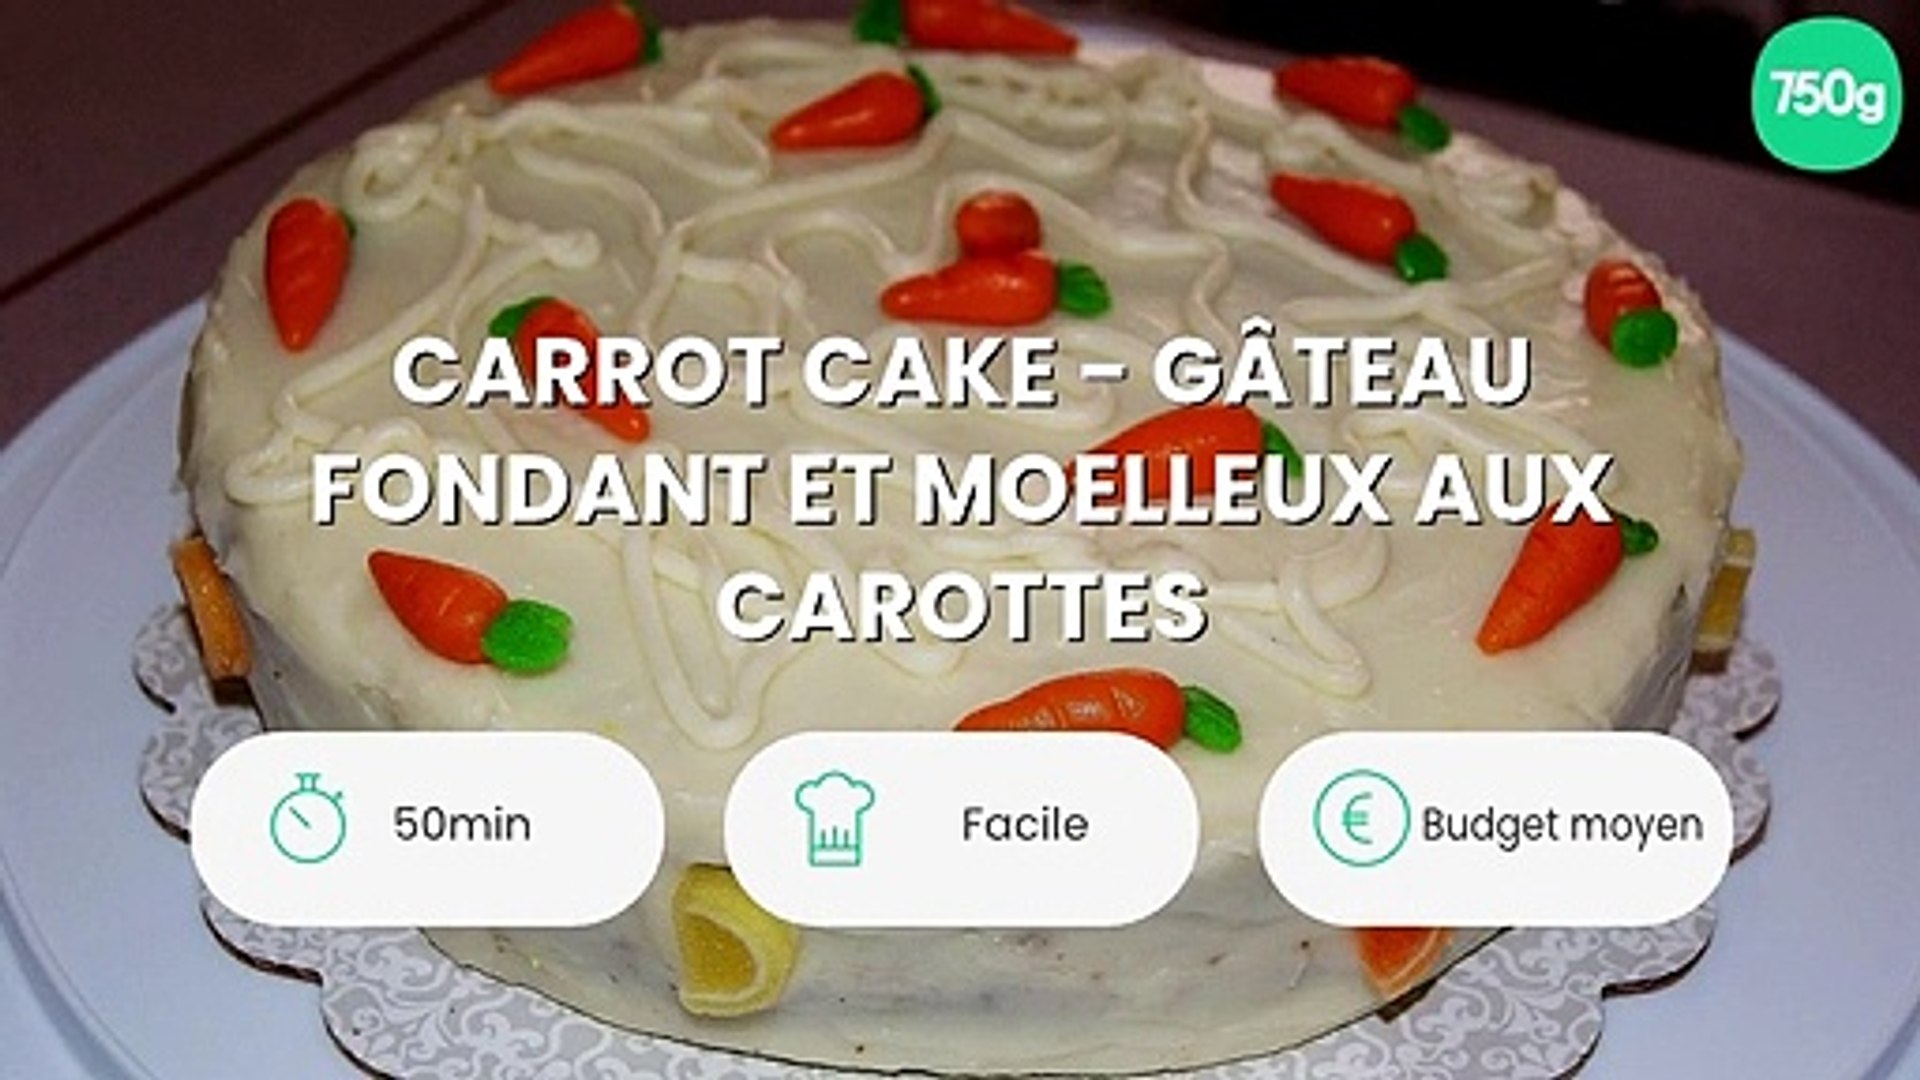 Carrot Cake Gateau Fondant Et Moelleux Aux Carottes Video Dailymotion